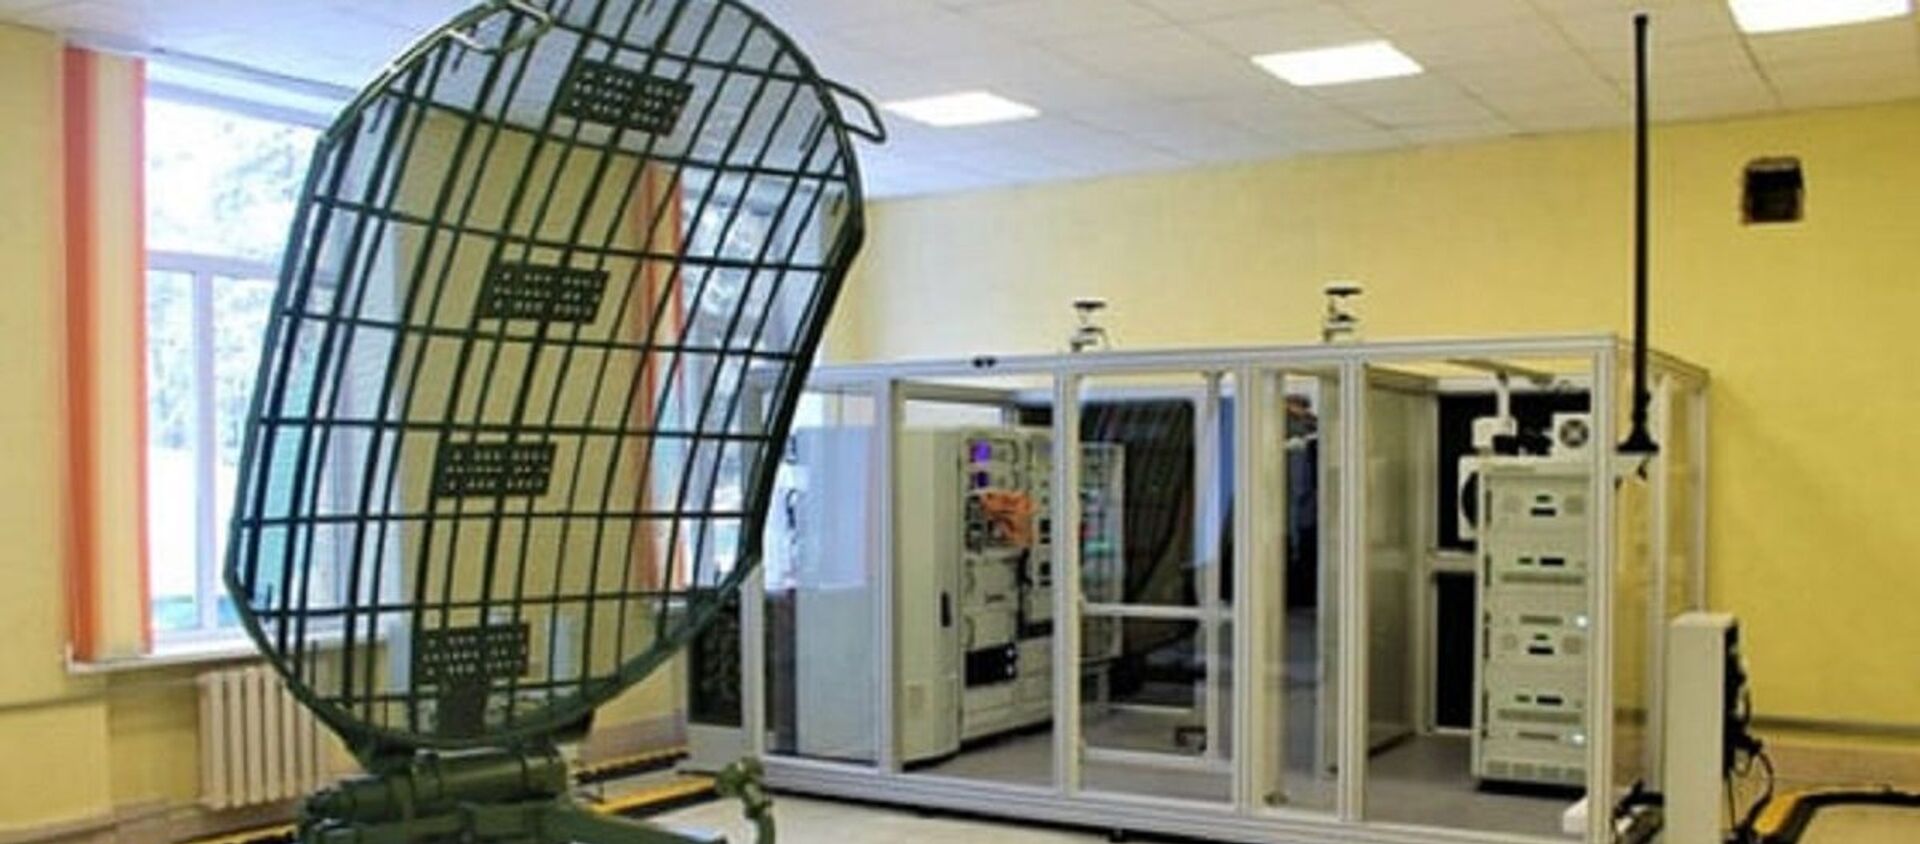 Новый тренажер для связистов поступил в Военную академию - Sputnik Беларусь, 1920, 08.02.2021